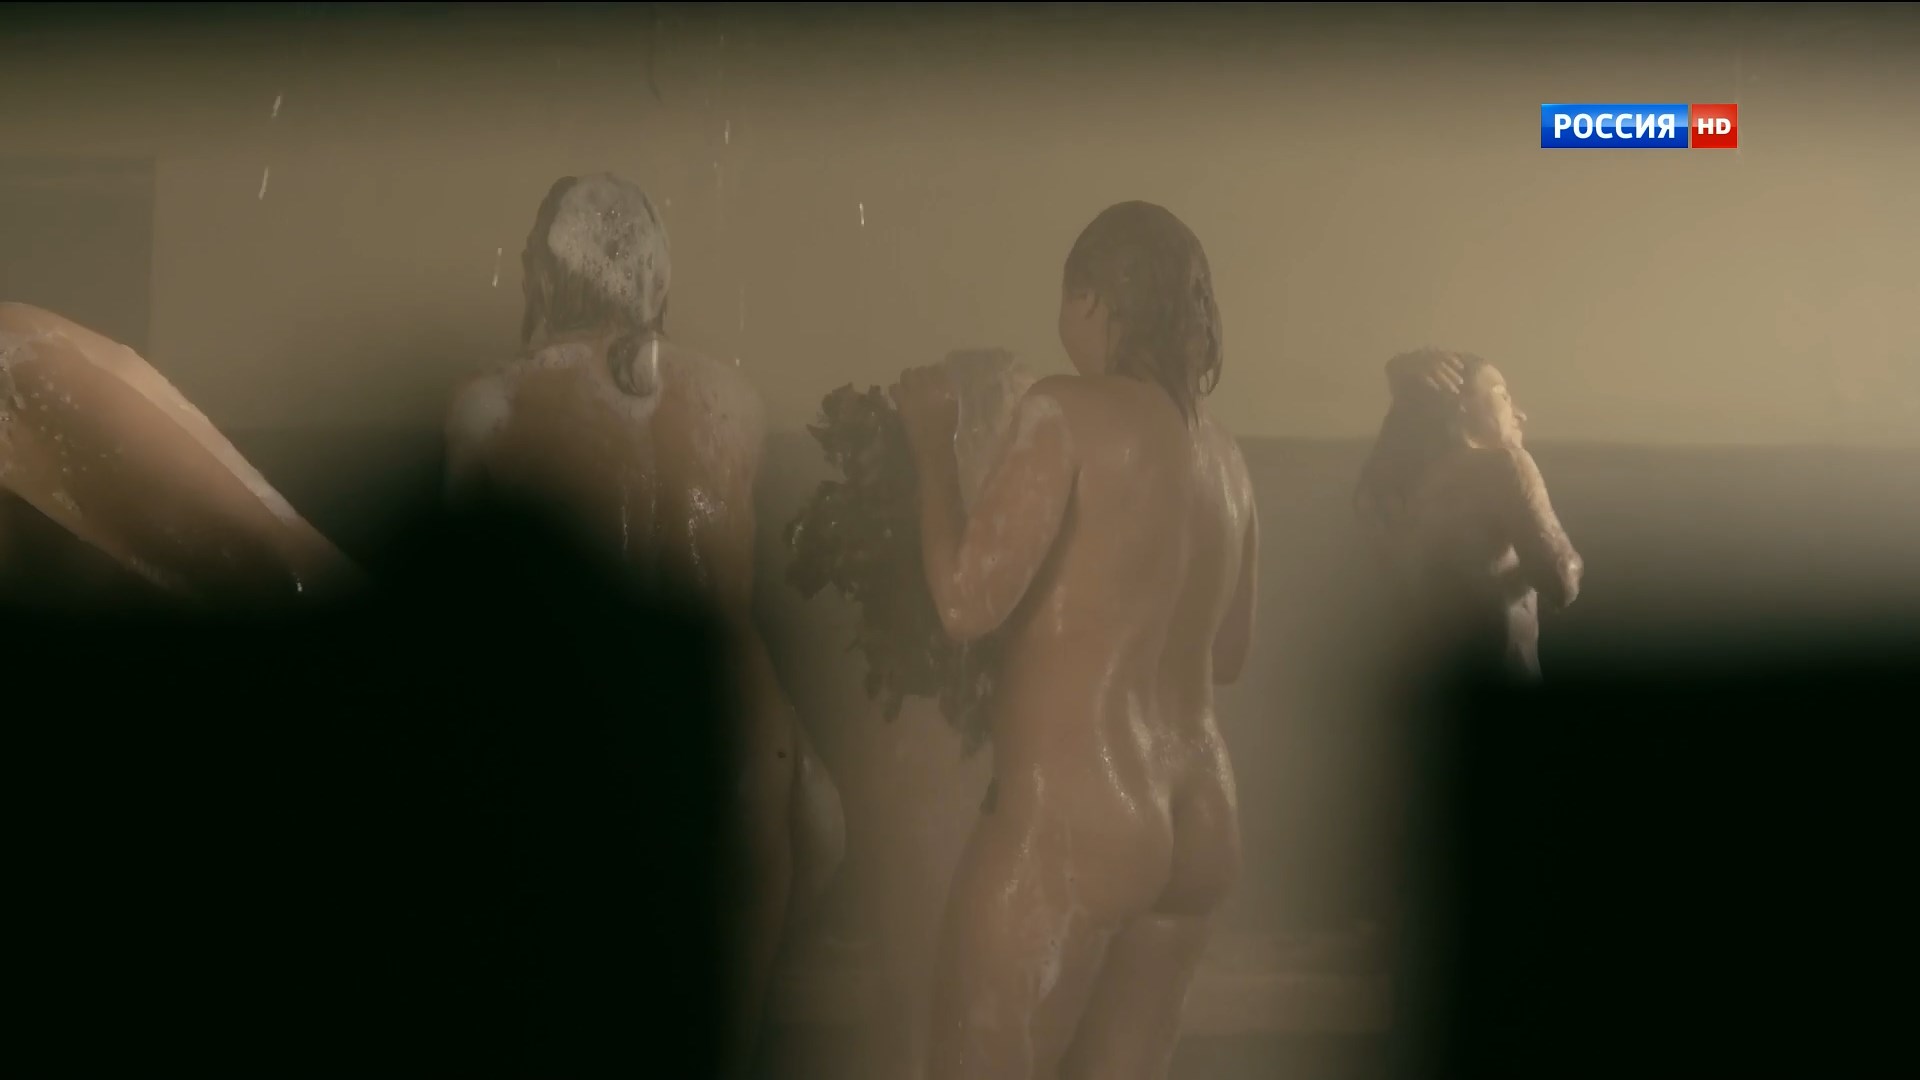 Nude Video Celebs Anastasiya Makeeva Nude Istrebiteli Poslednij